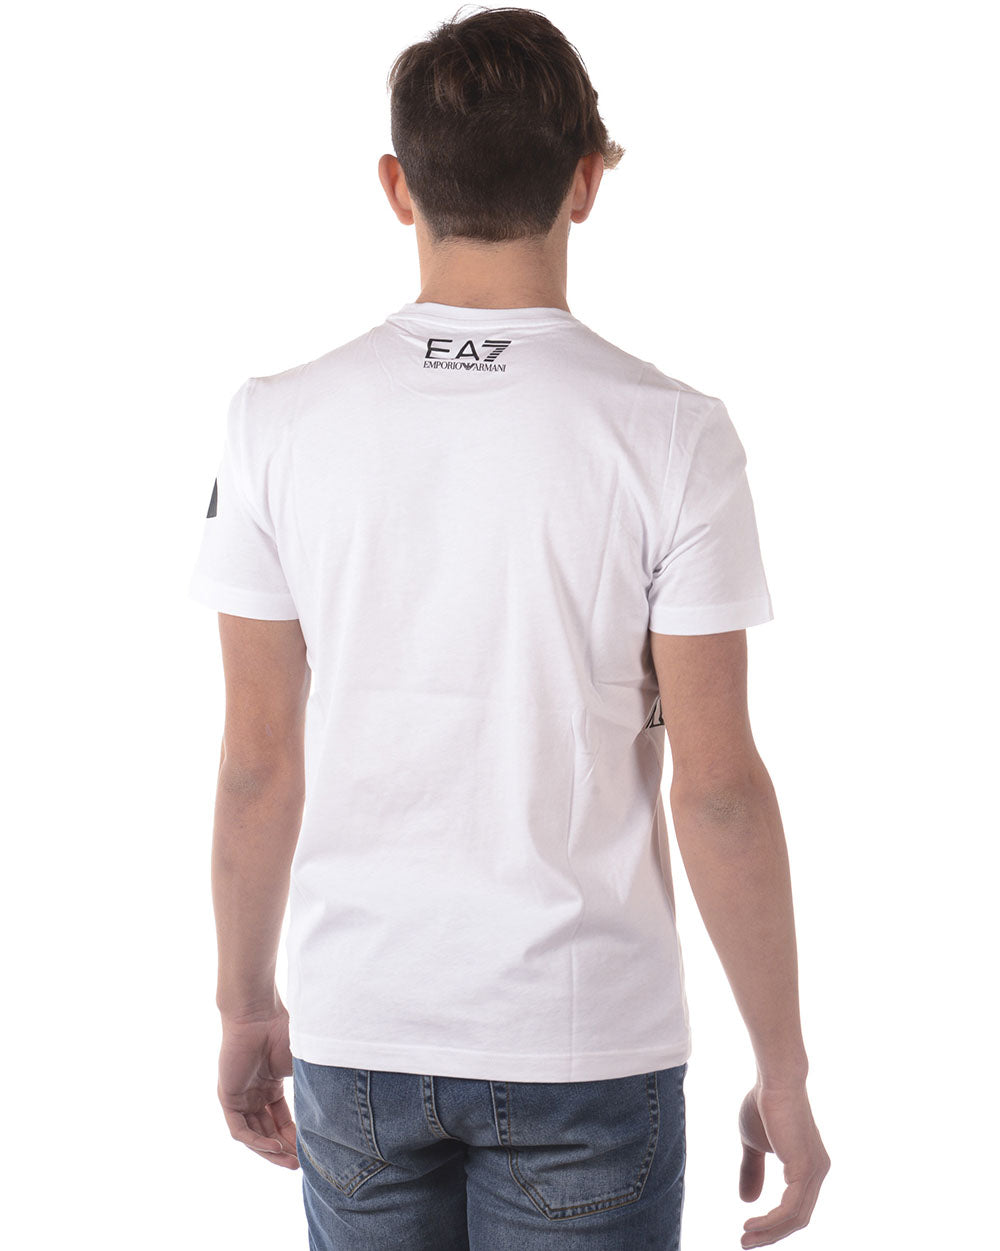 T-shirt Emporio Armani EA7 XL Rosso - mem39